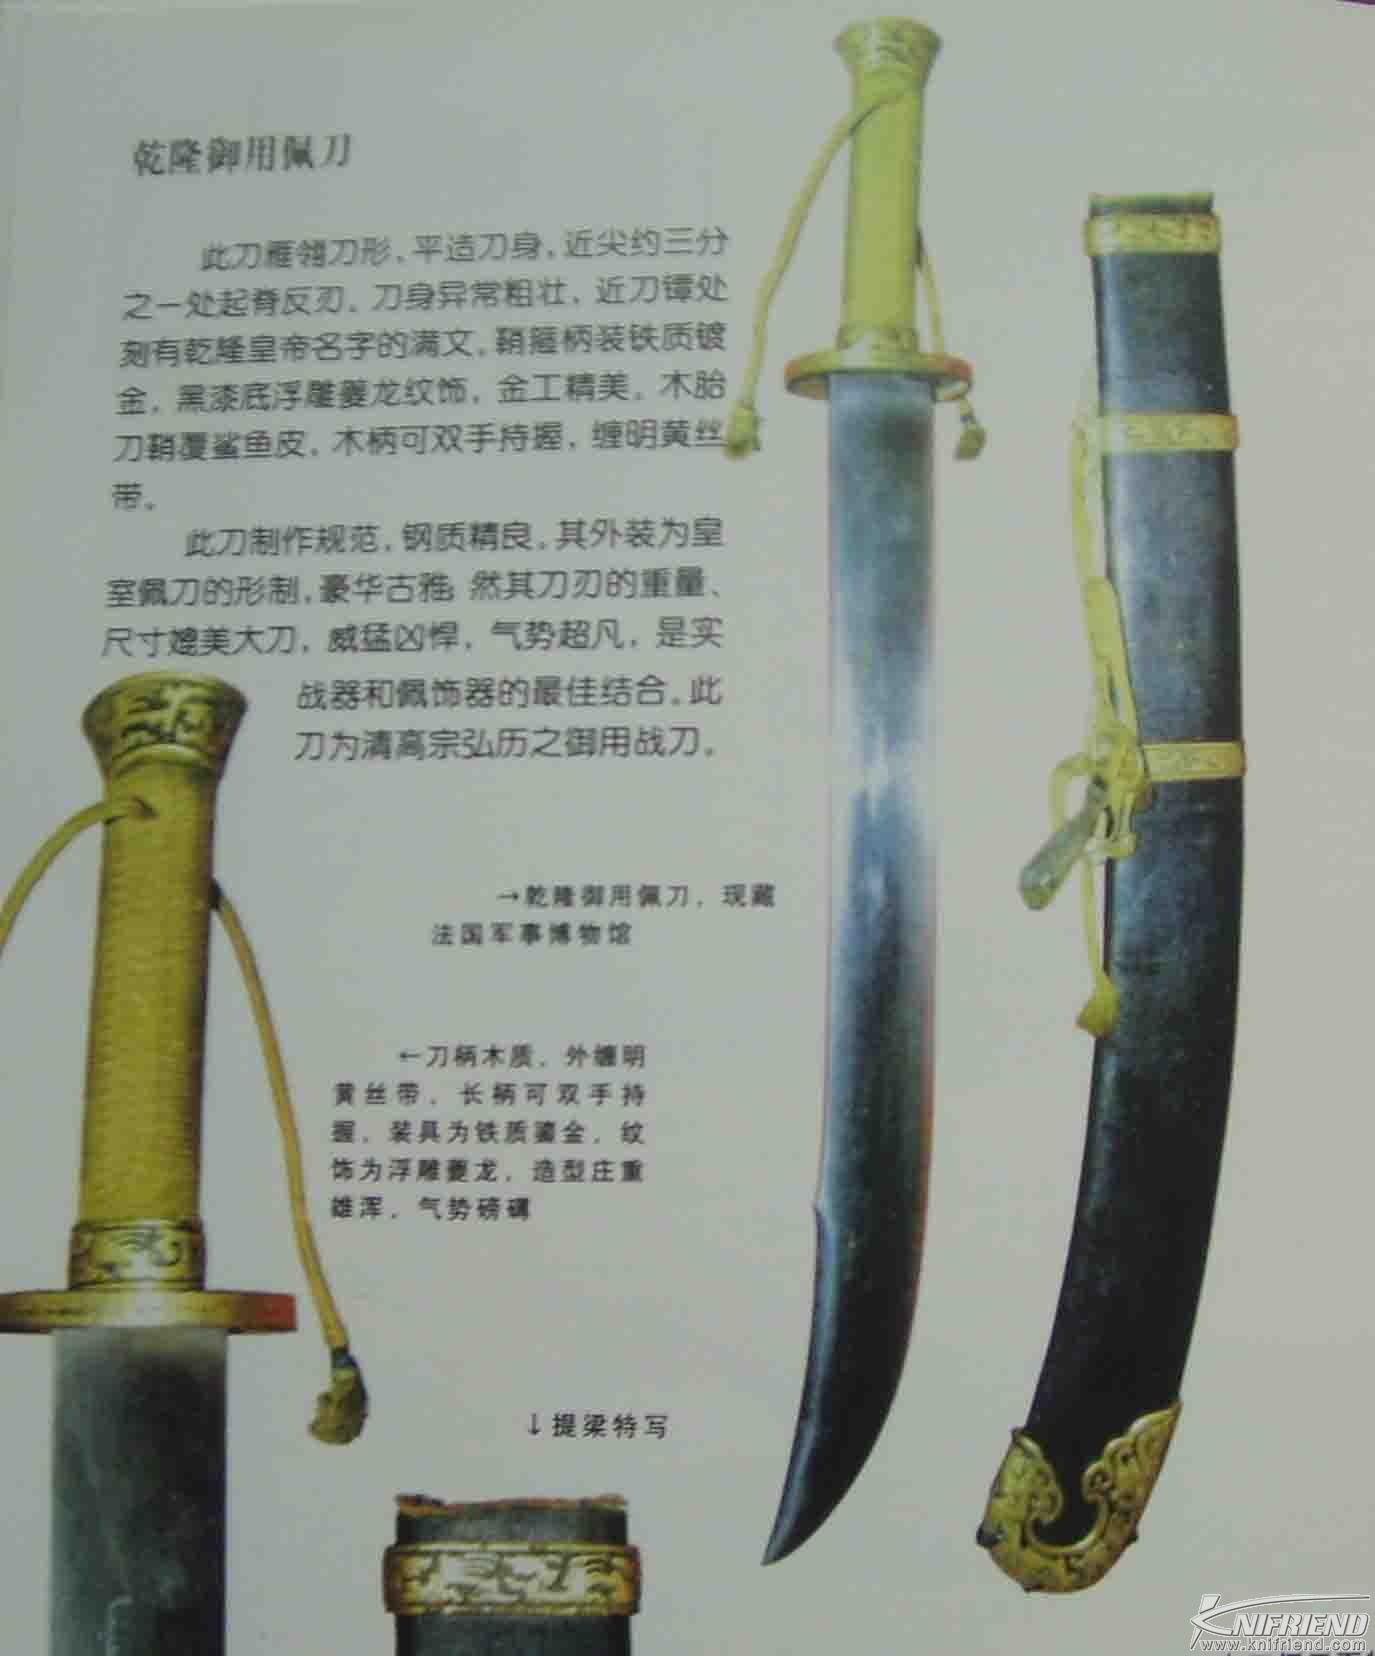 历史的轨迹---中国刀与日本刀发展简述(新手教学帖)_20